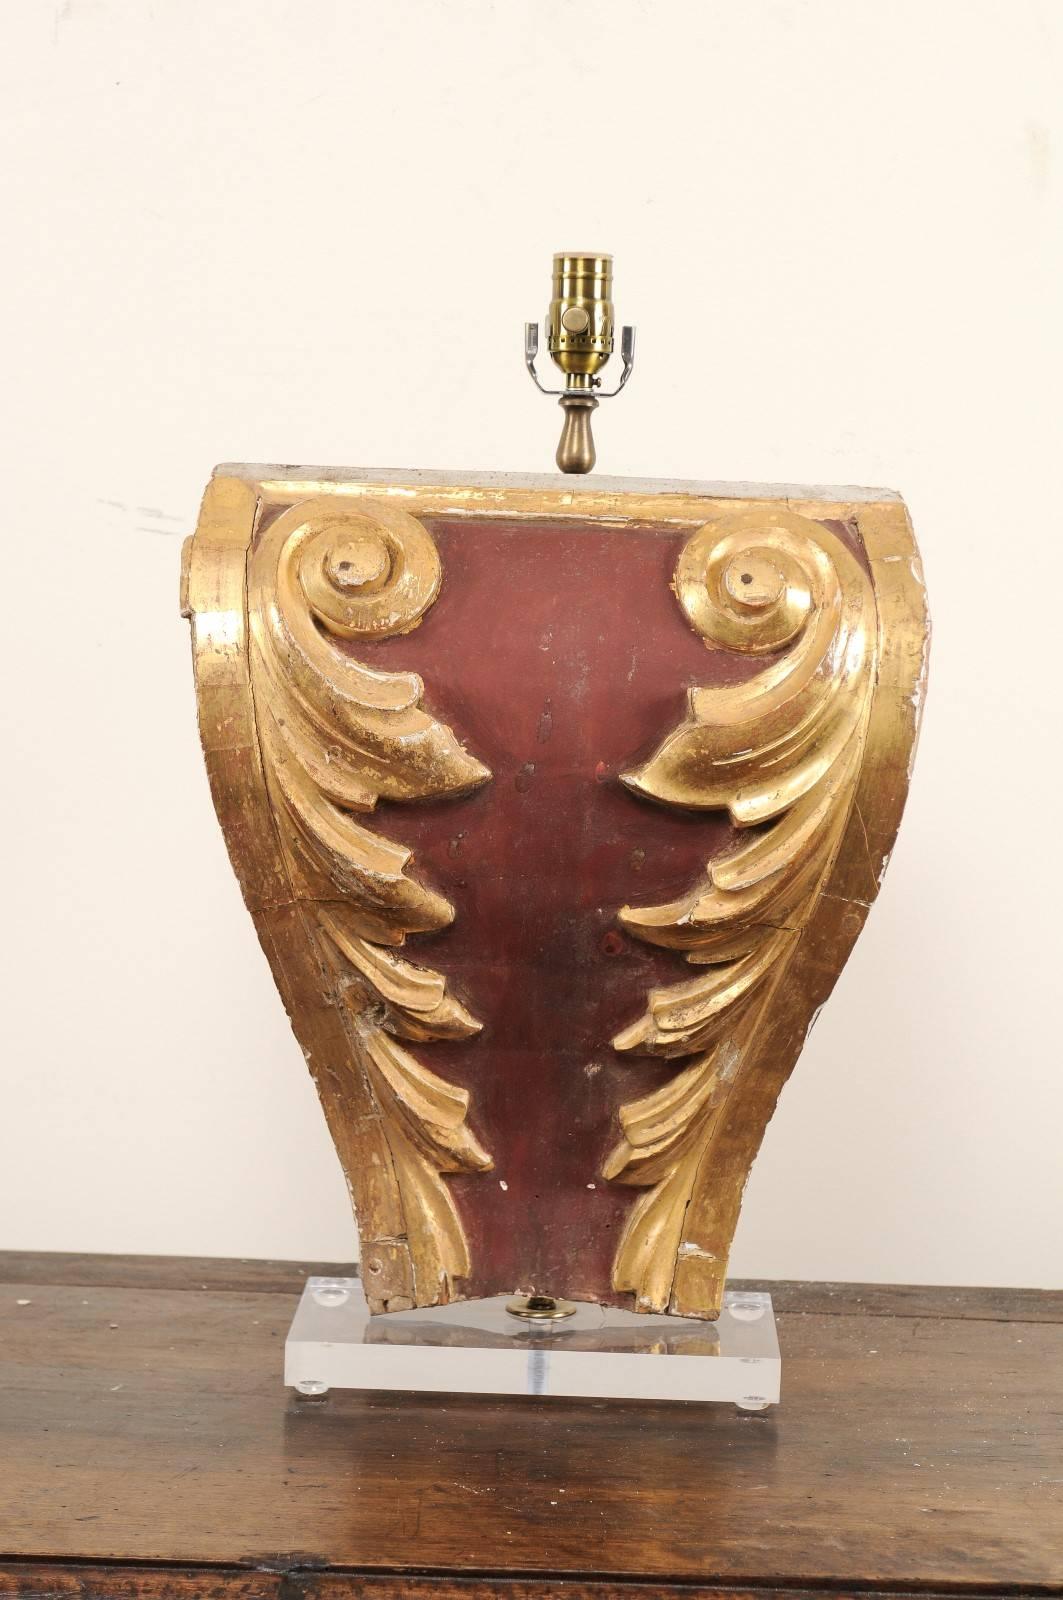 Lampe de table italienne à fragment du XIXe siècle. Cette lampe de table a été fabriquée à partir d'un fragment italien du XIXe siècle, monté sur une base en Lucite plus récente. Cette lampe présente un magnifique fragment sculpté de volutes et de